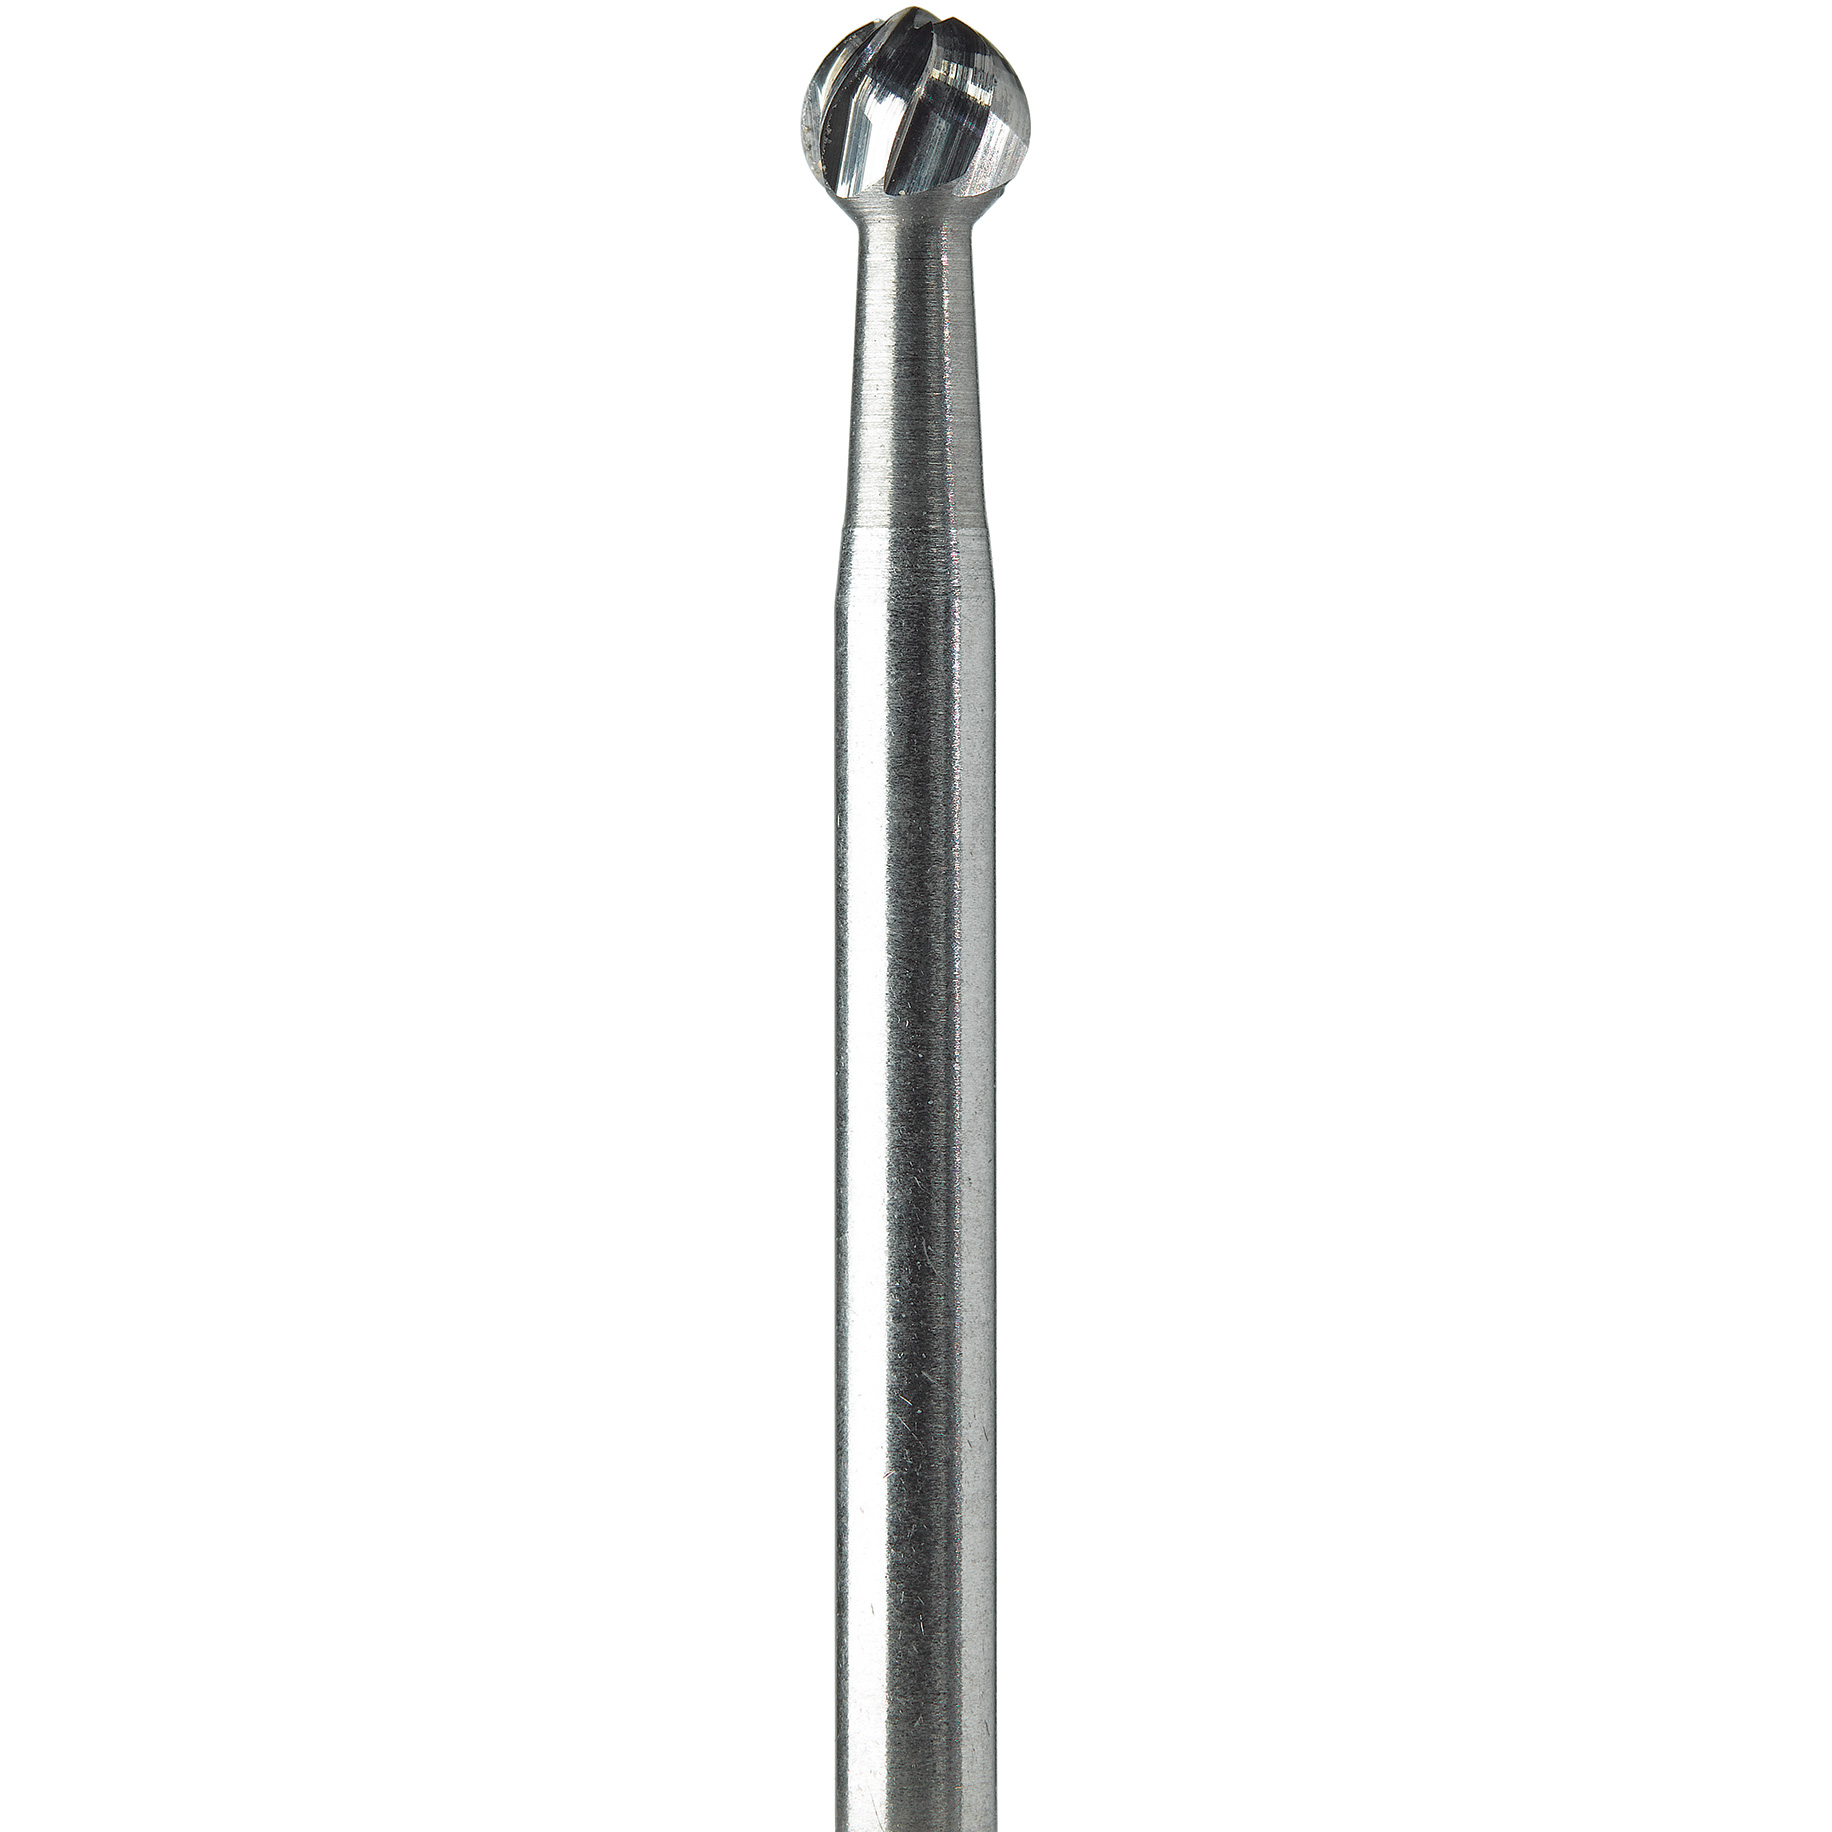 Surgical Burs - Tungsten Carbide 2 Round FG 010 